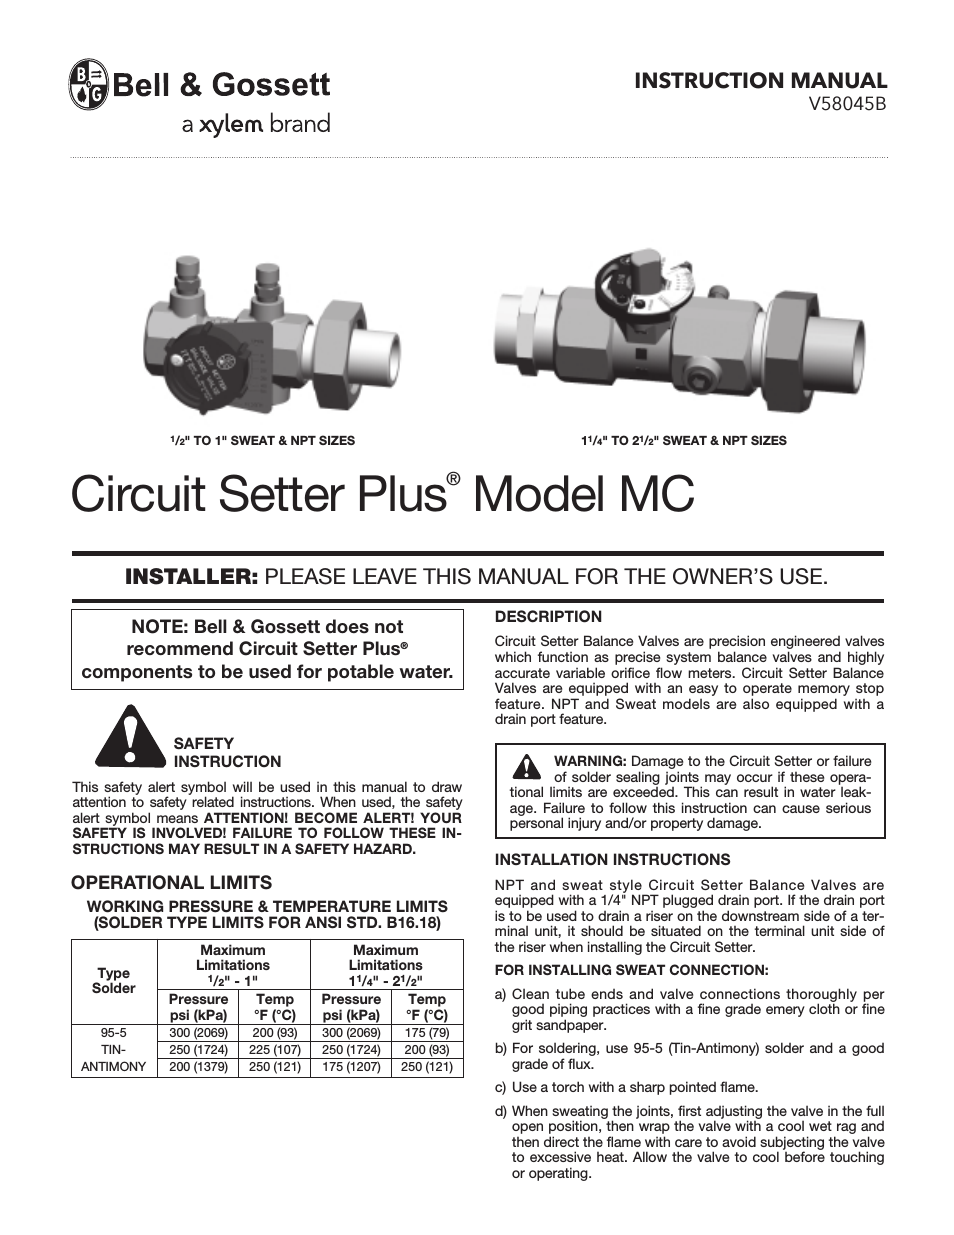 V58045B Circuit Setter Plus MC